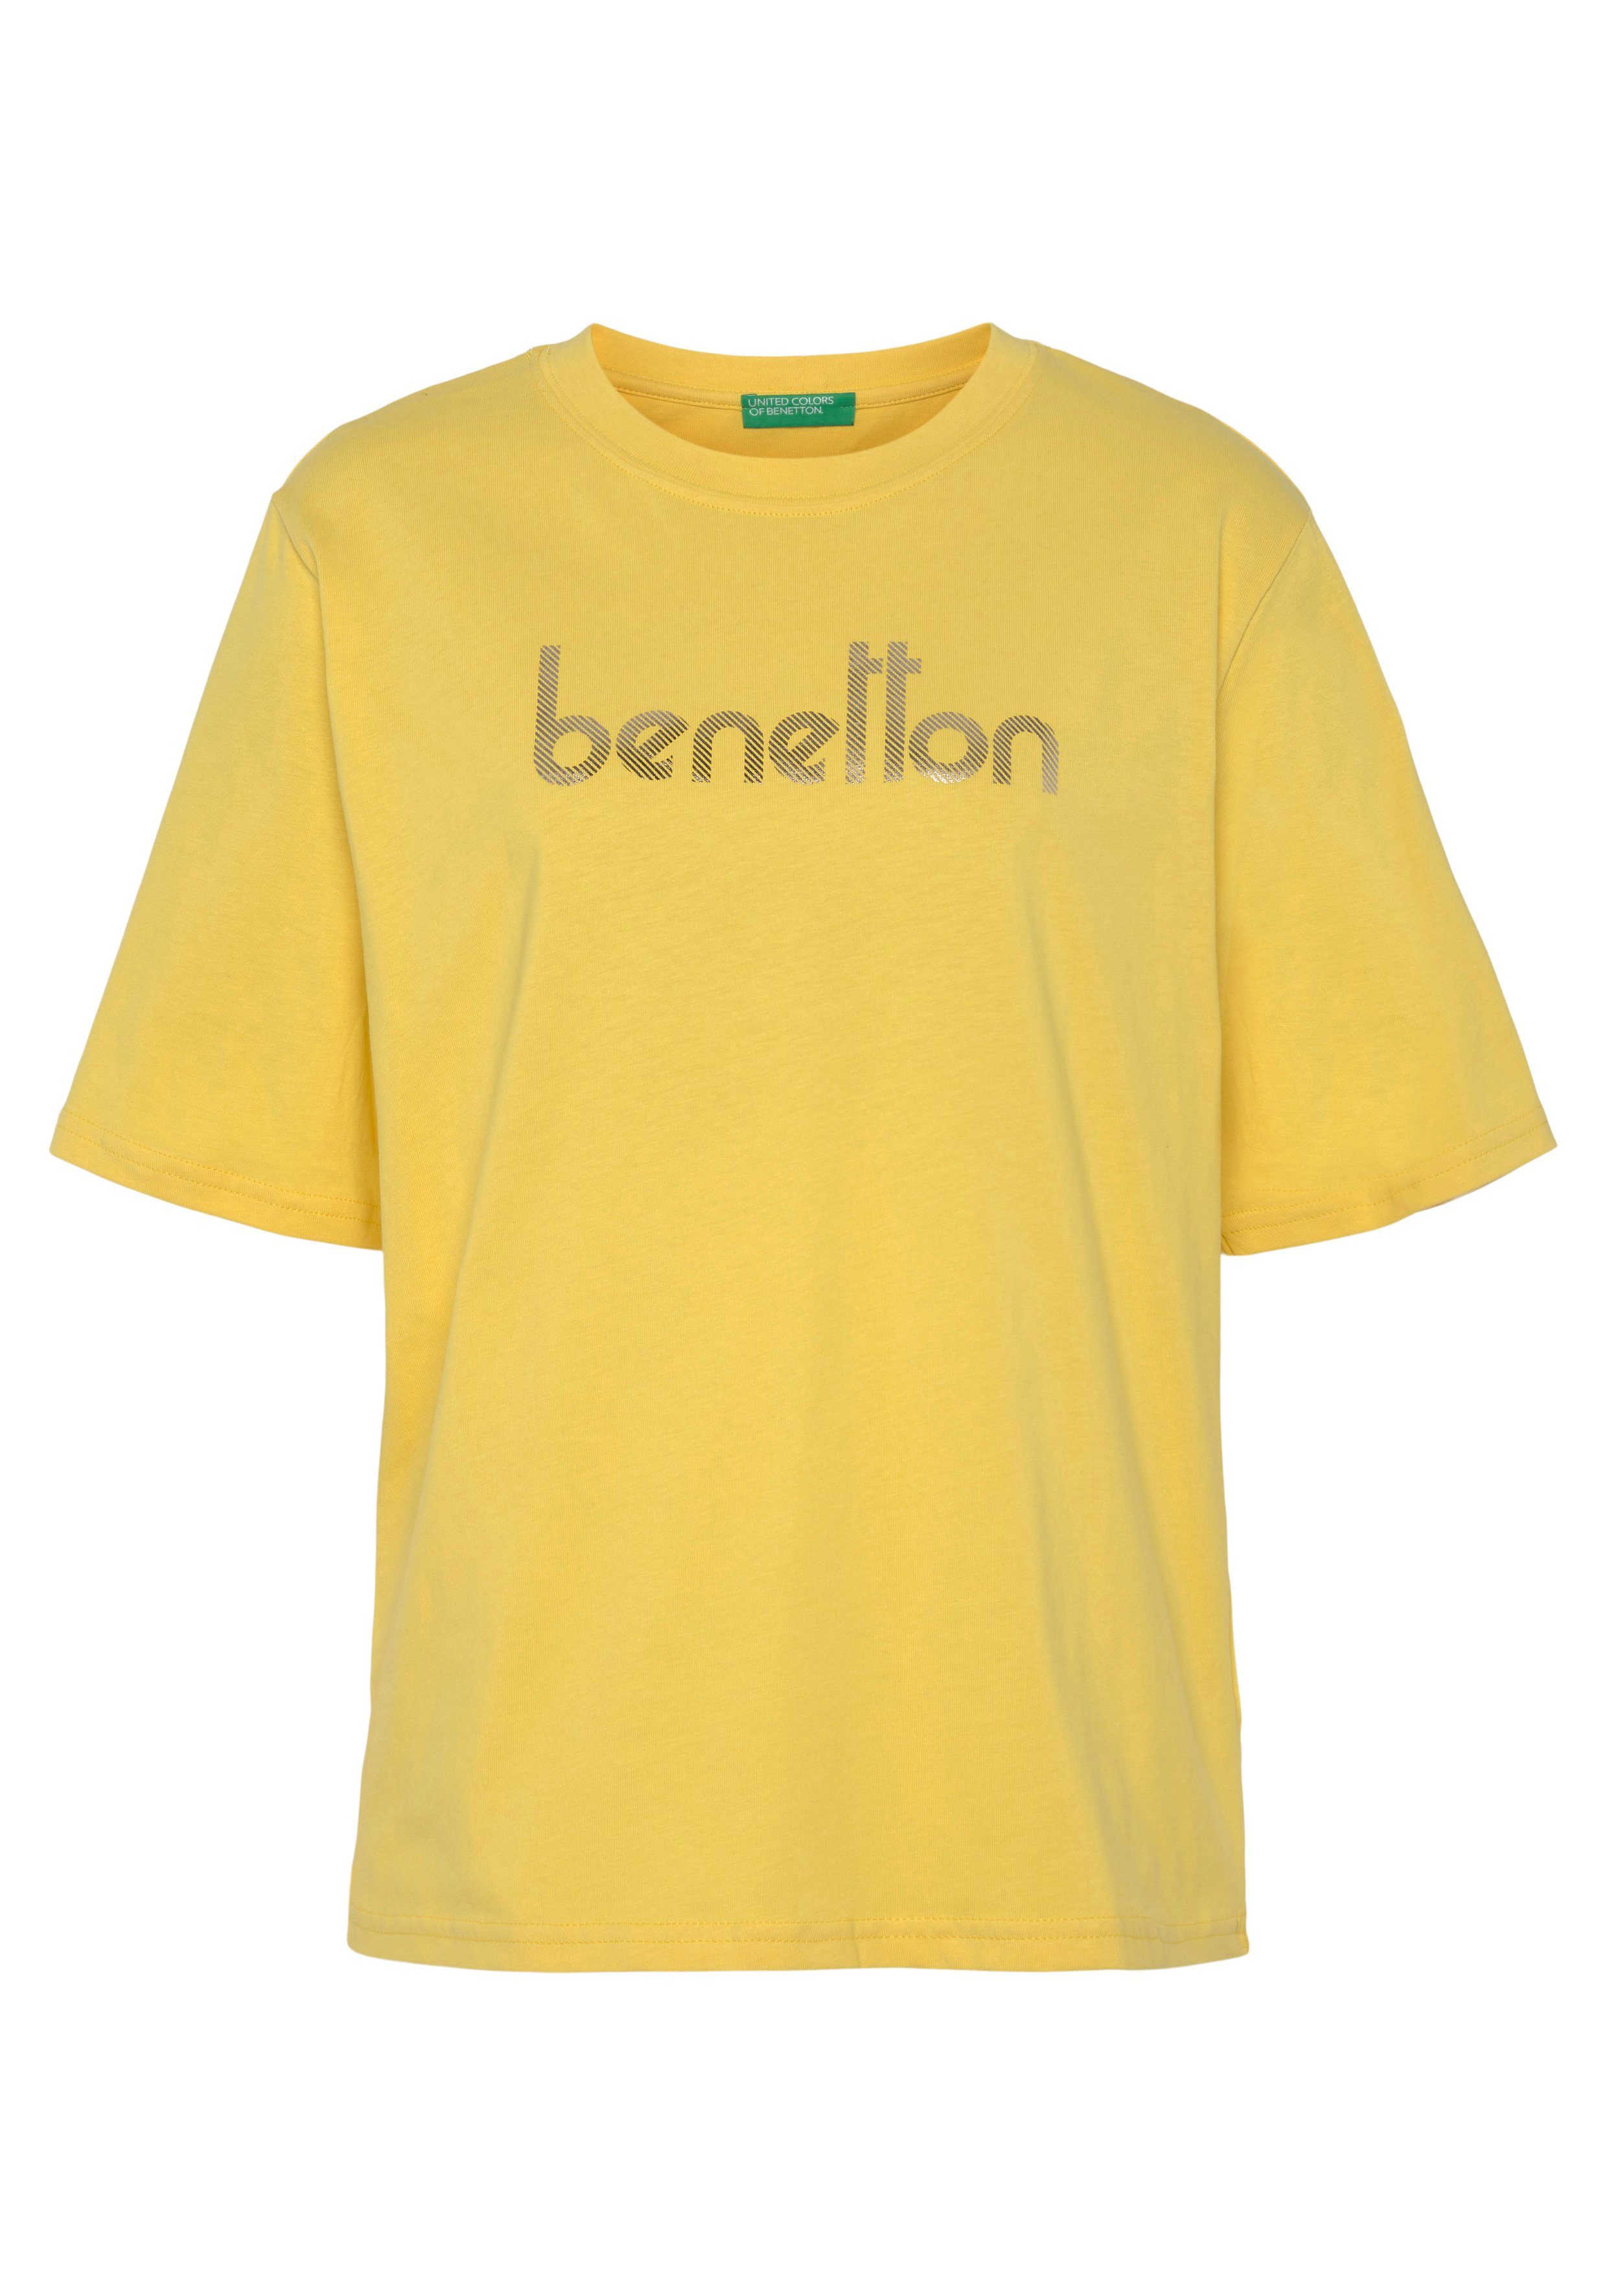 United Colors of Benetton T-Shirt mit Logodruck auf der Brust gelb